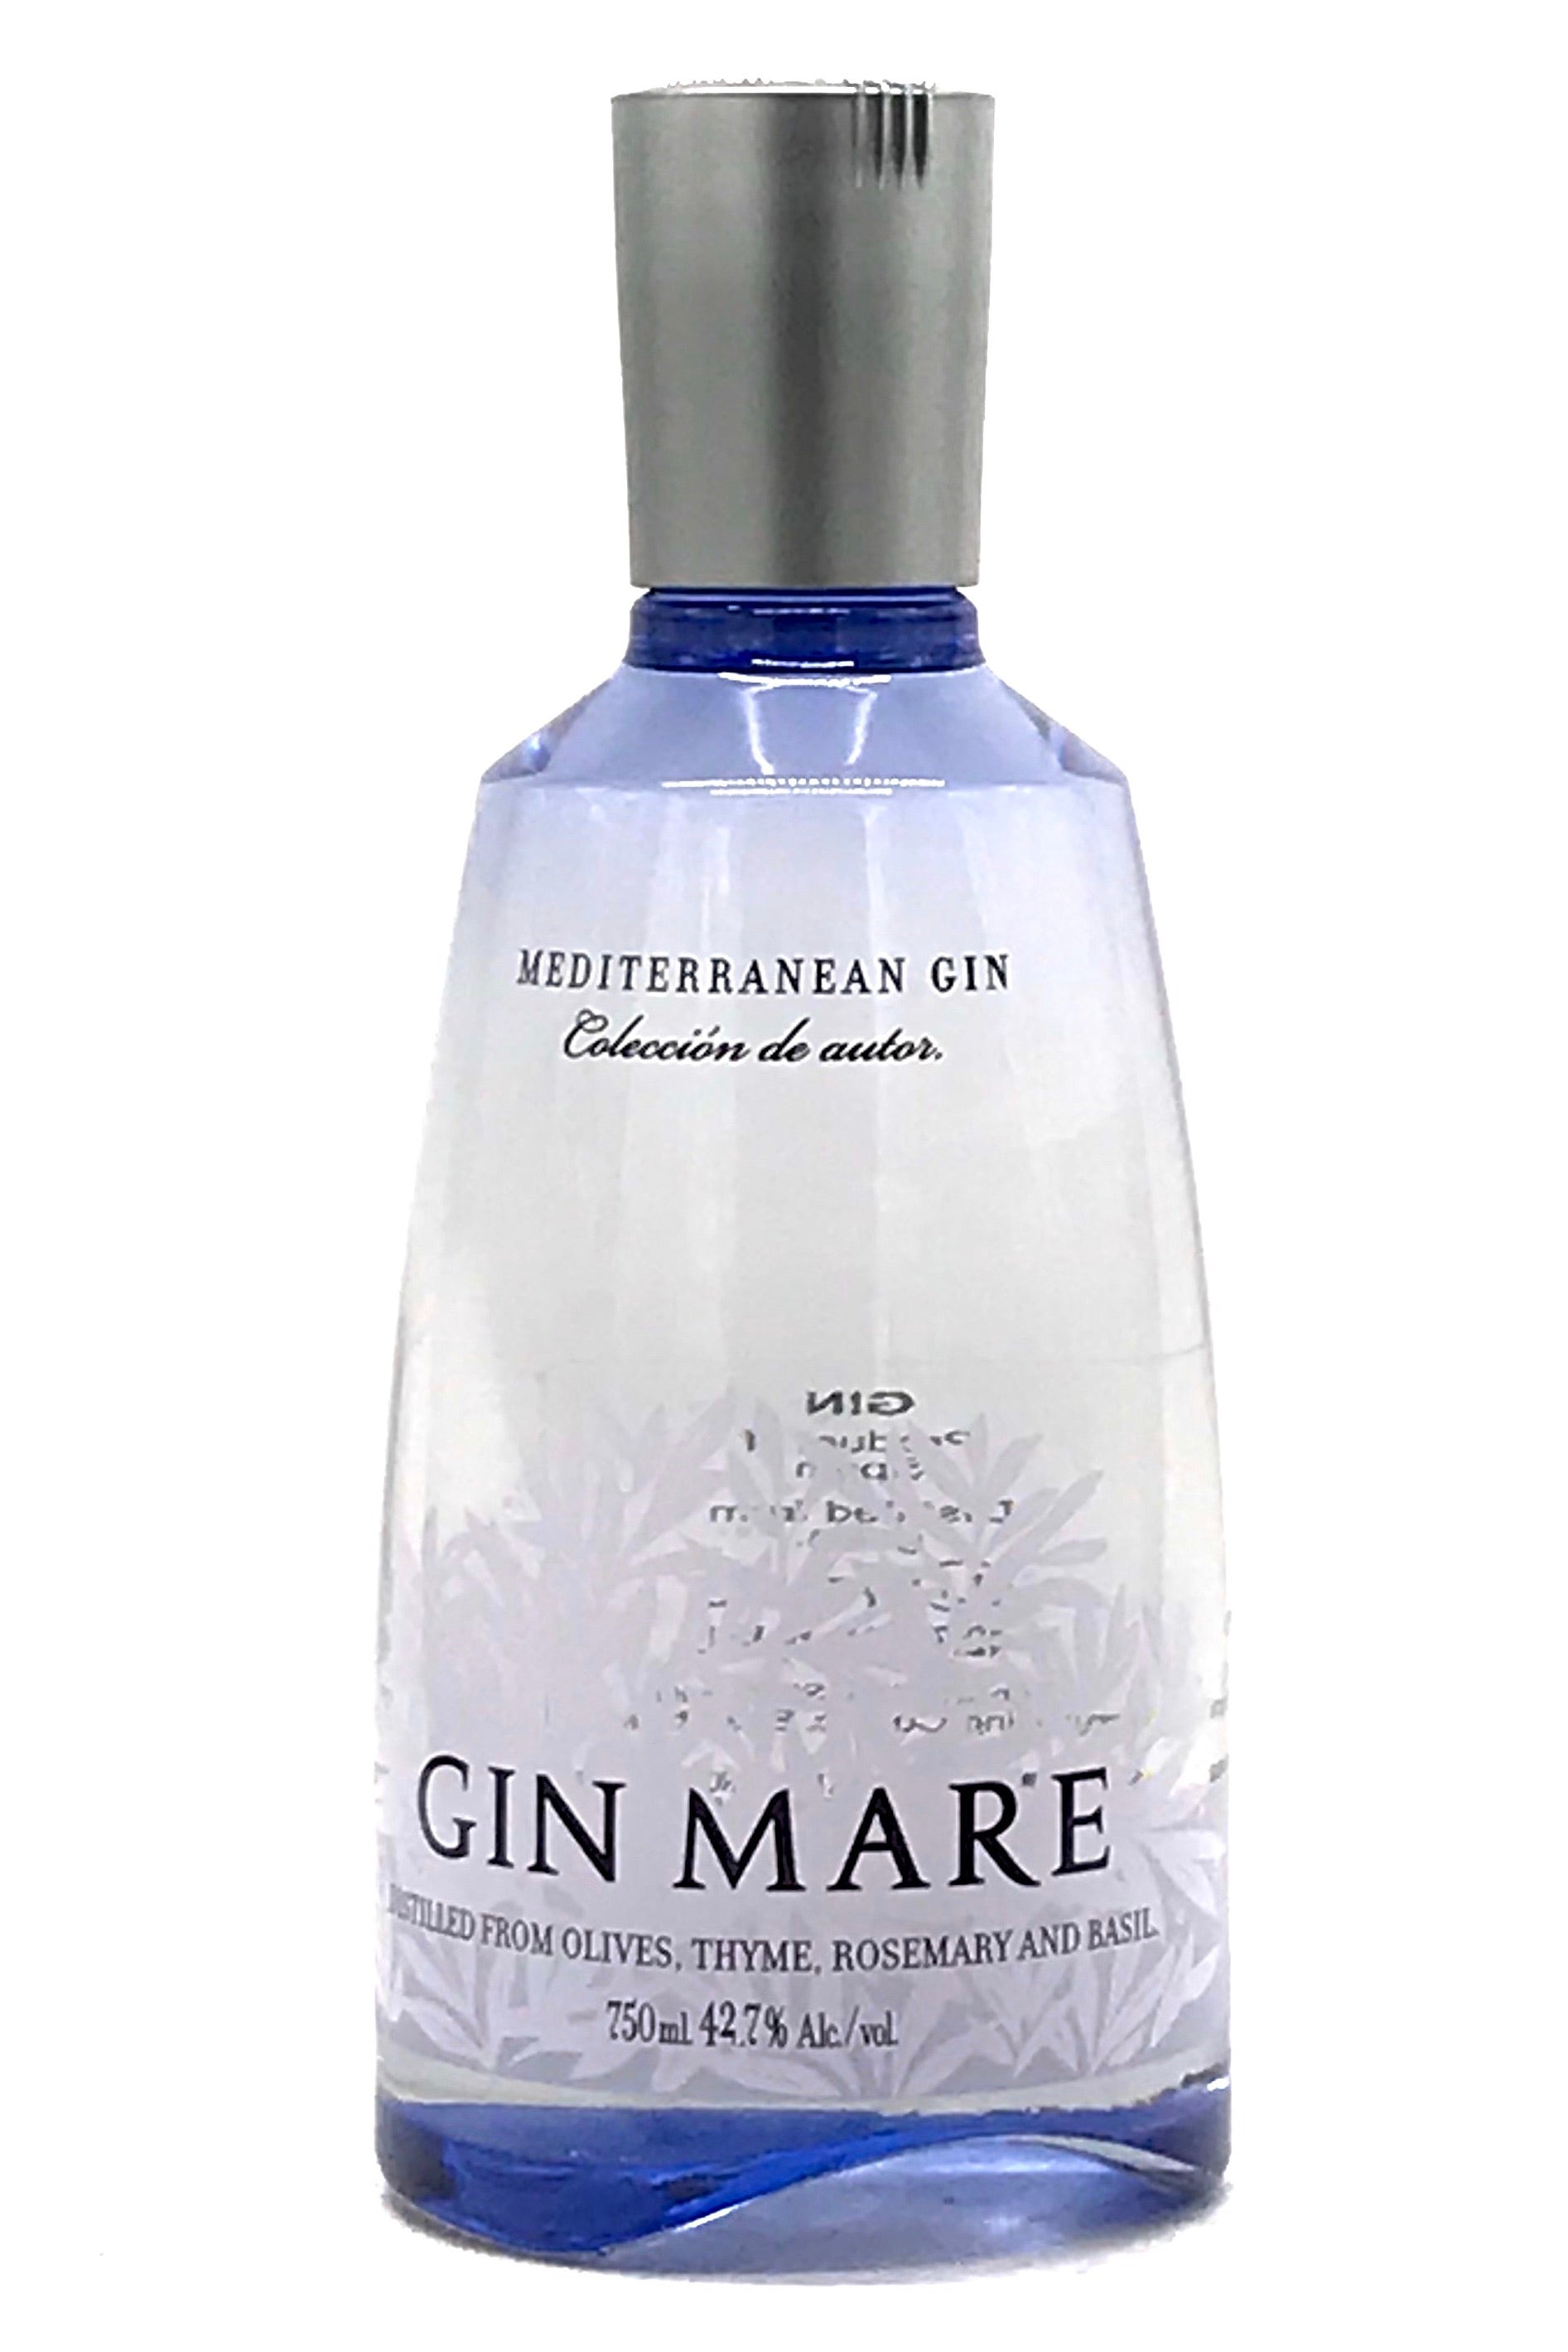 Buy Gin Mare Mediterranean Gin Online